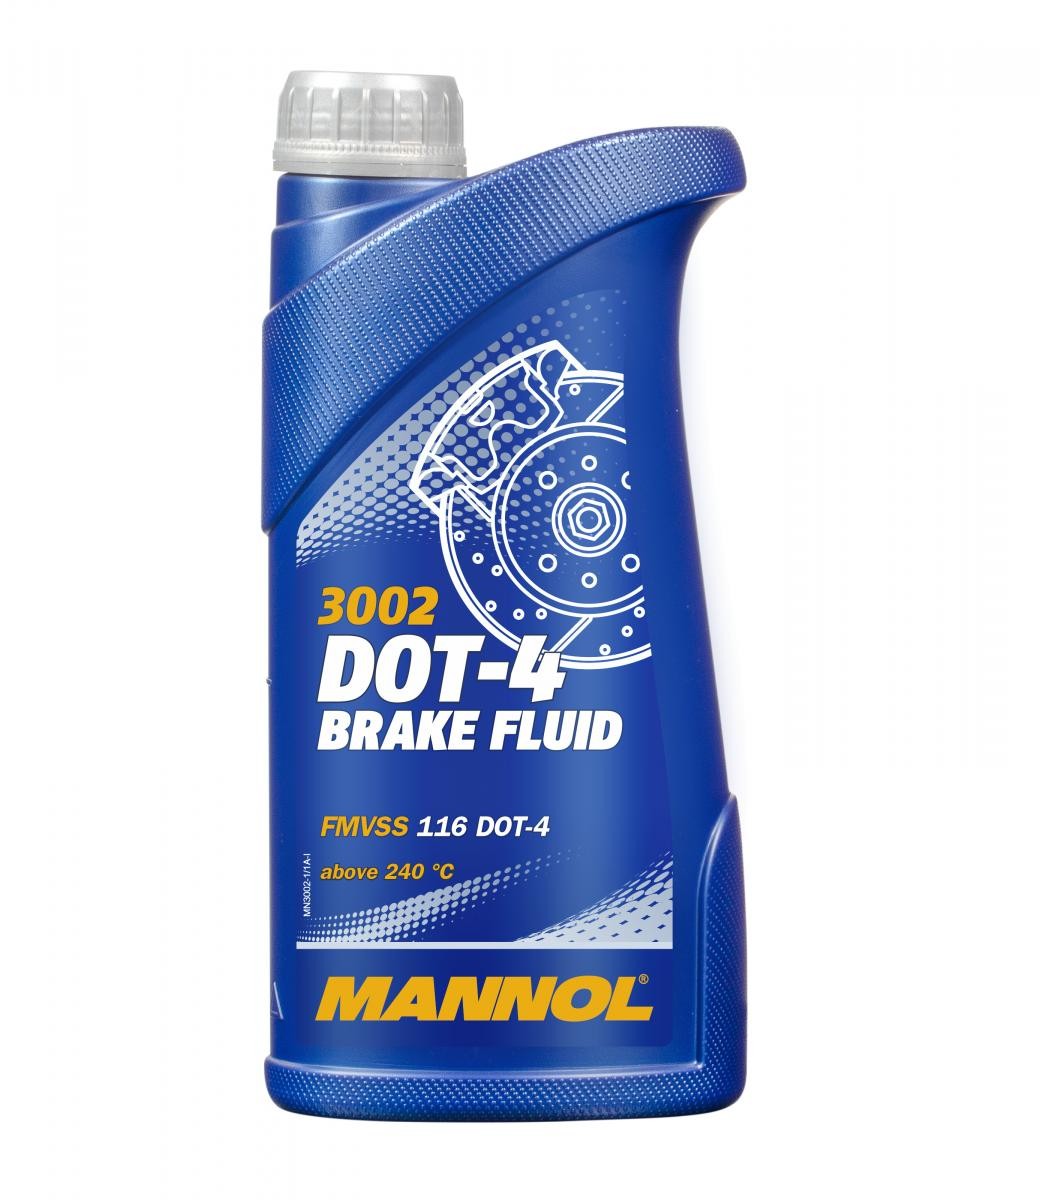 HOREX VR6 Bremsflüssigkeit 1l MANNOL DOT-4 BRAKE FLUID MN3002-1